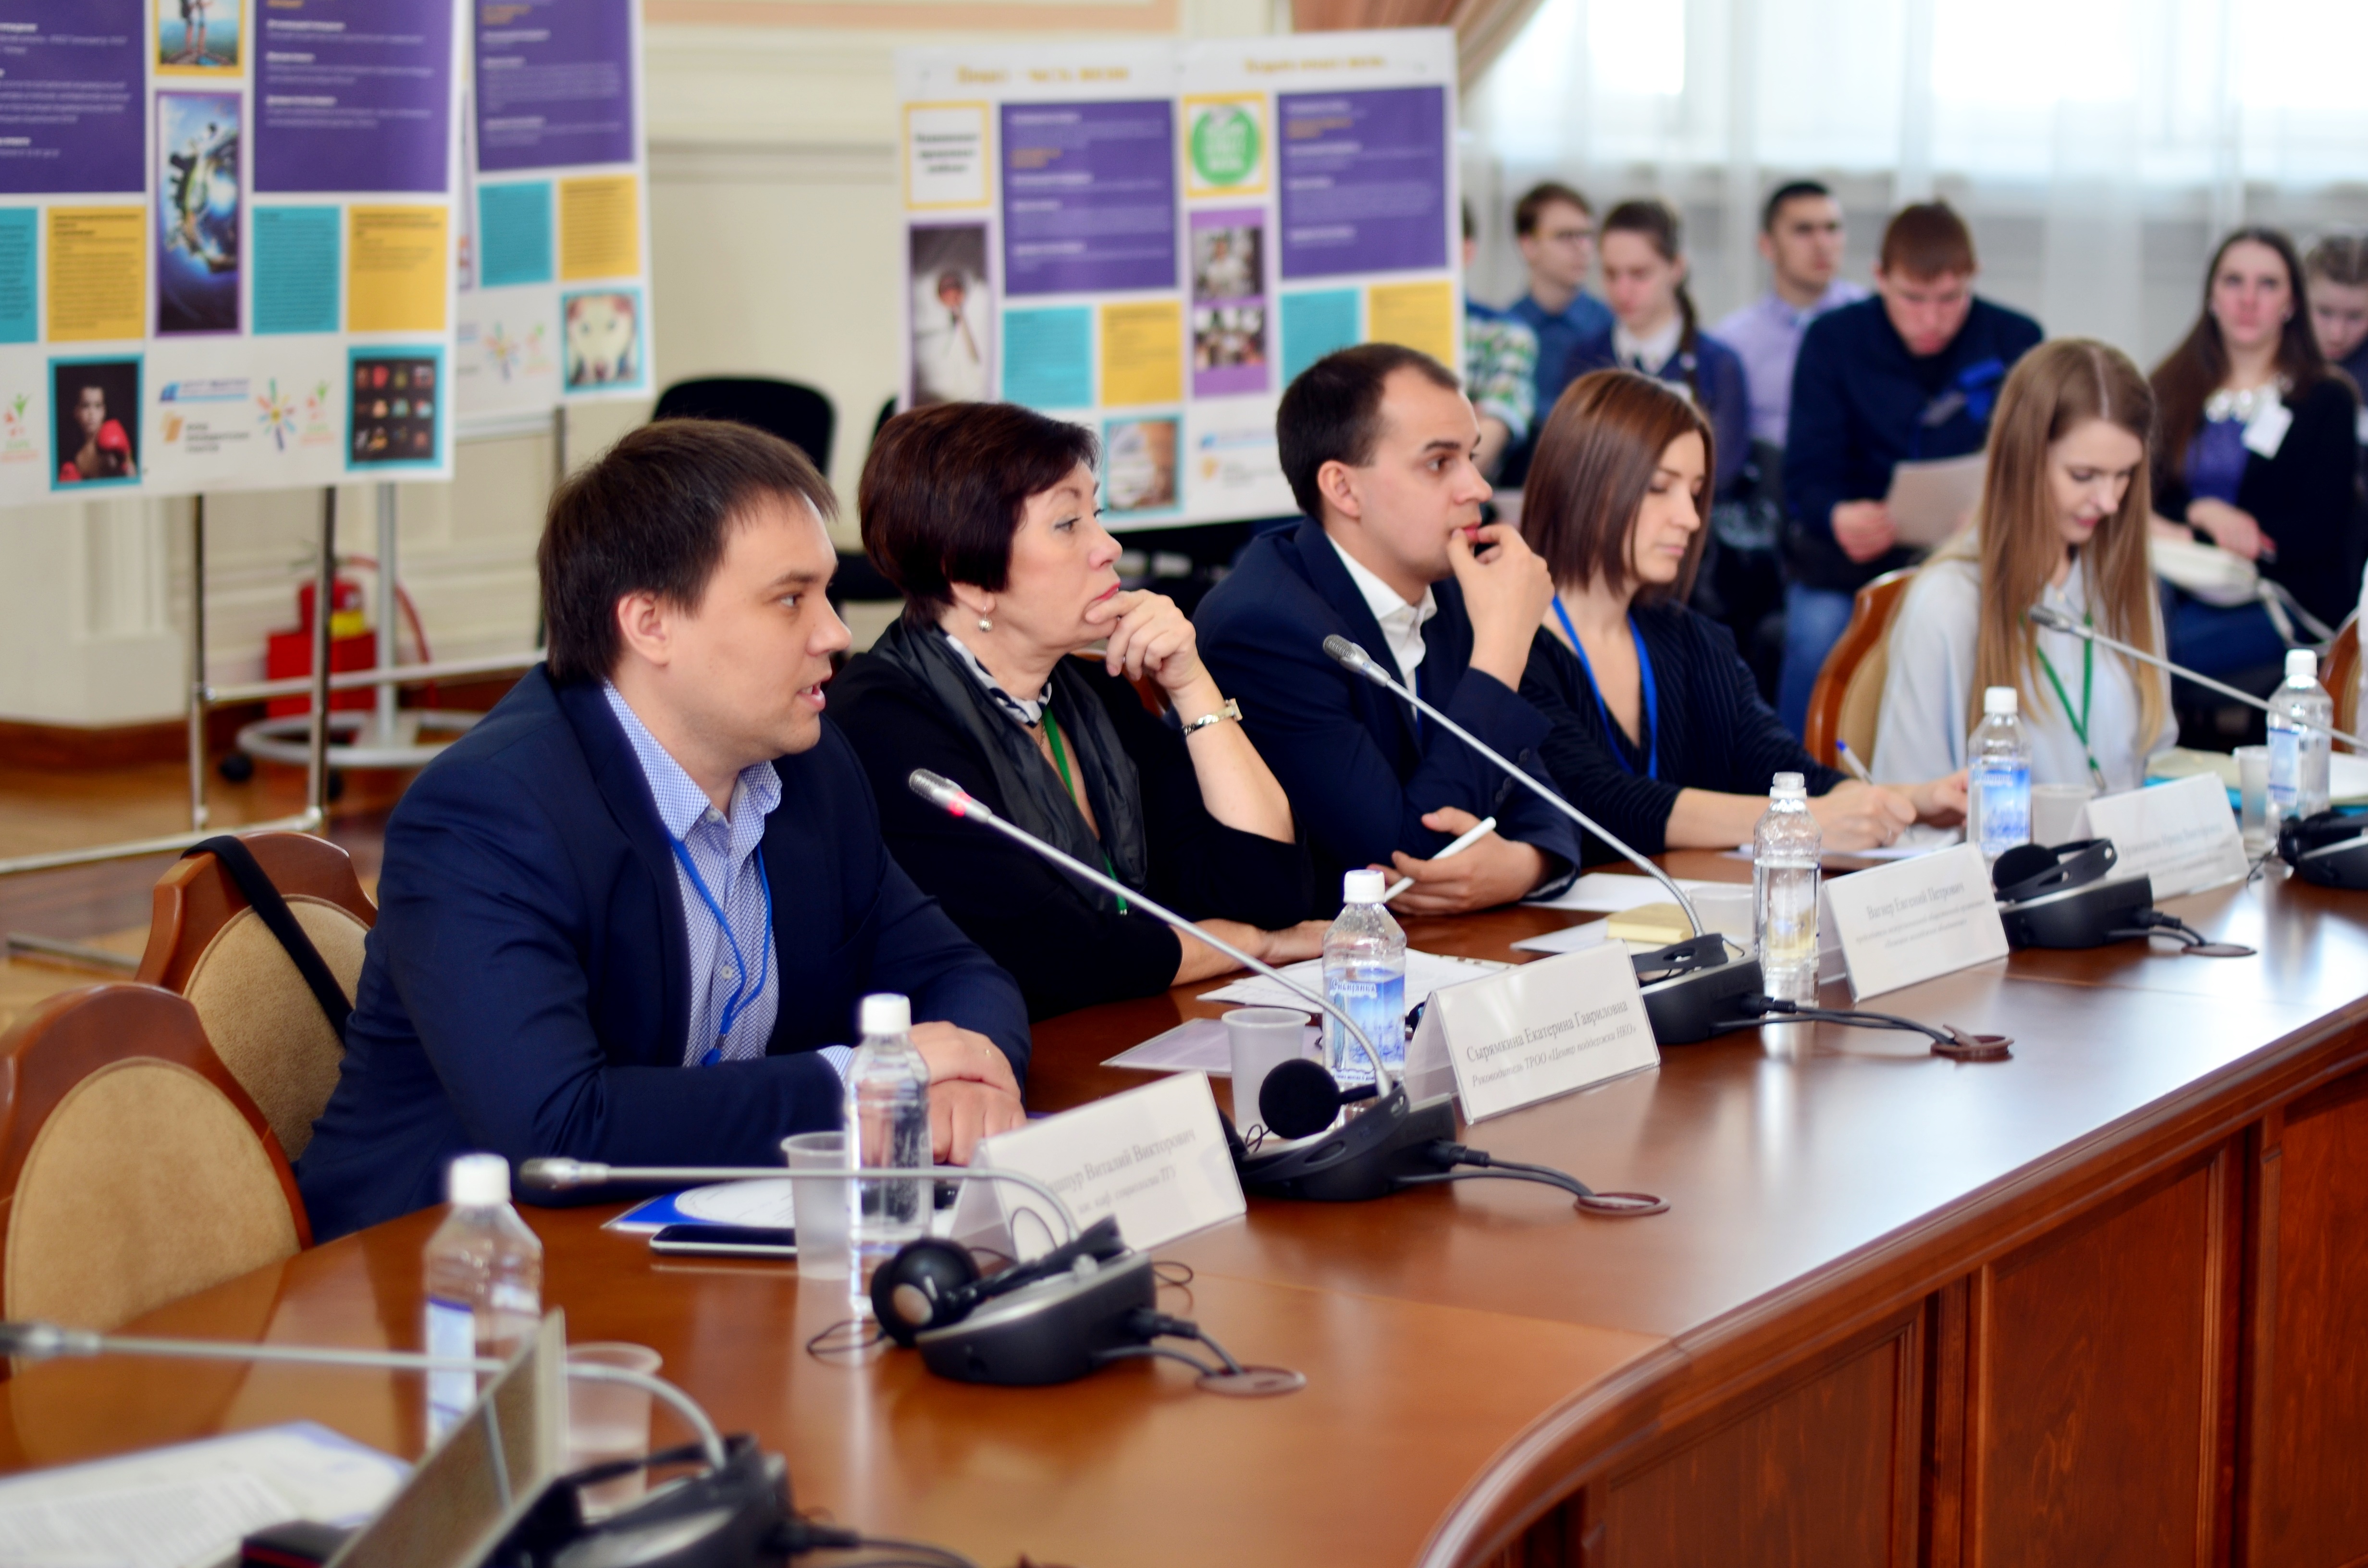 В Томске прошел Региональный молодежный образовательный форум «ВАЖНОЕ ДЕЛО»